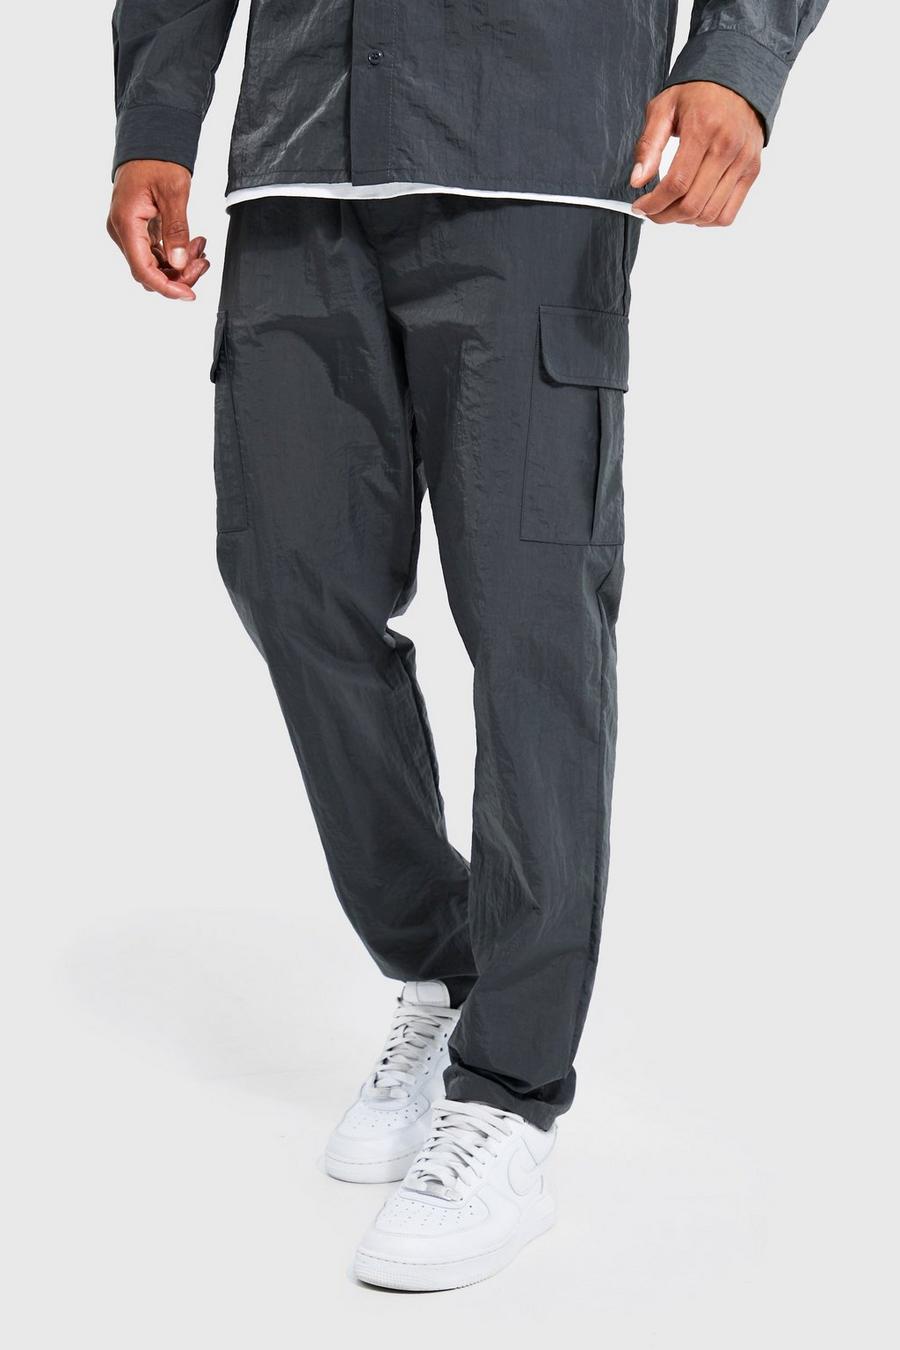 Pantalón ajustado cargo fruncido de nailon, Charcoal gris